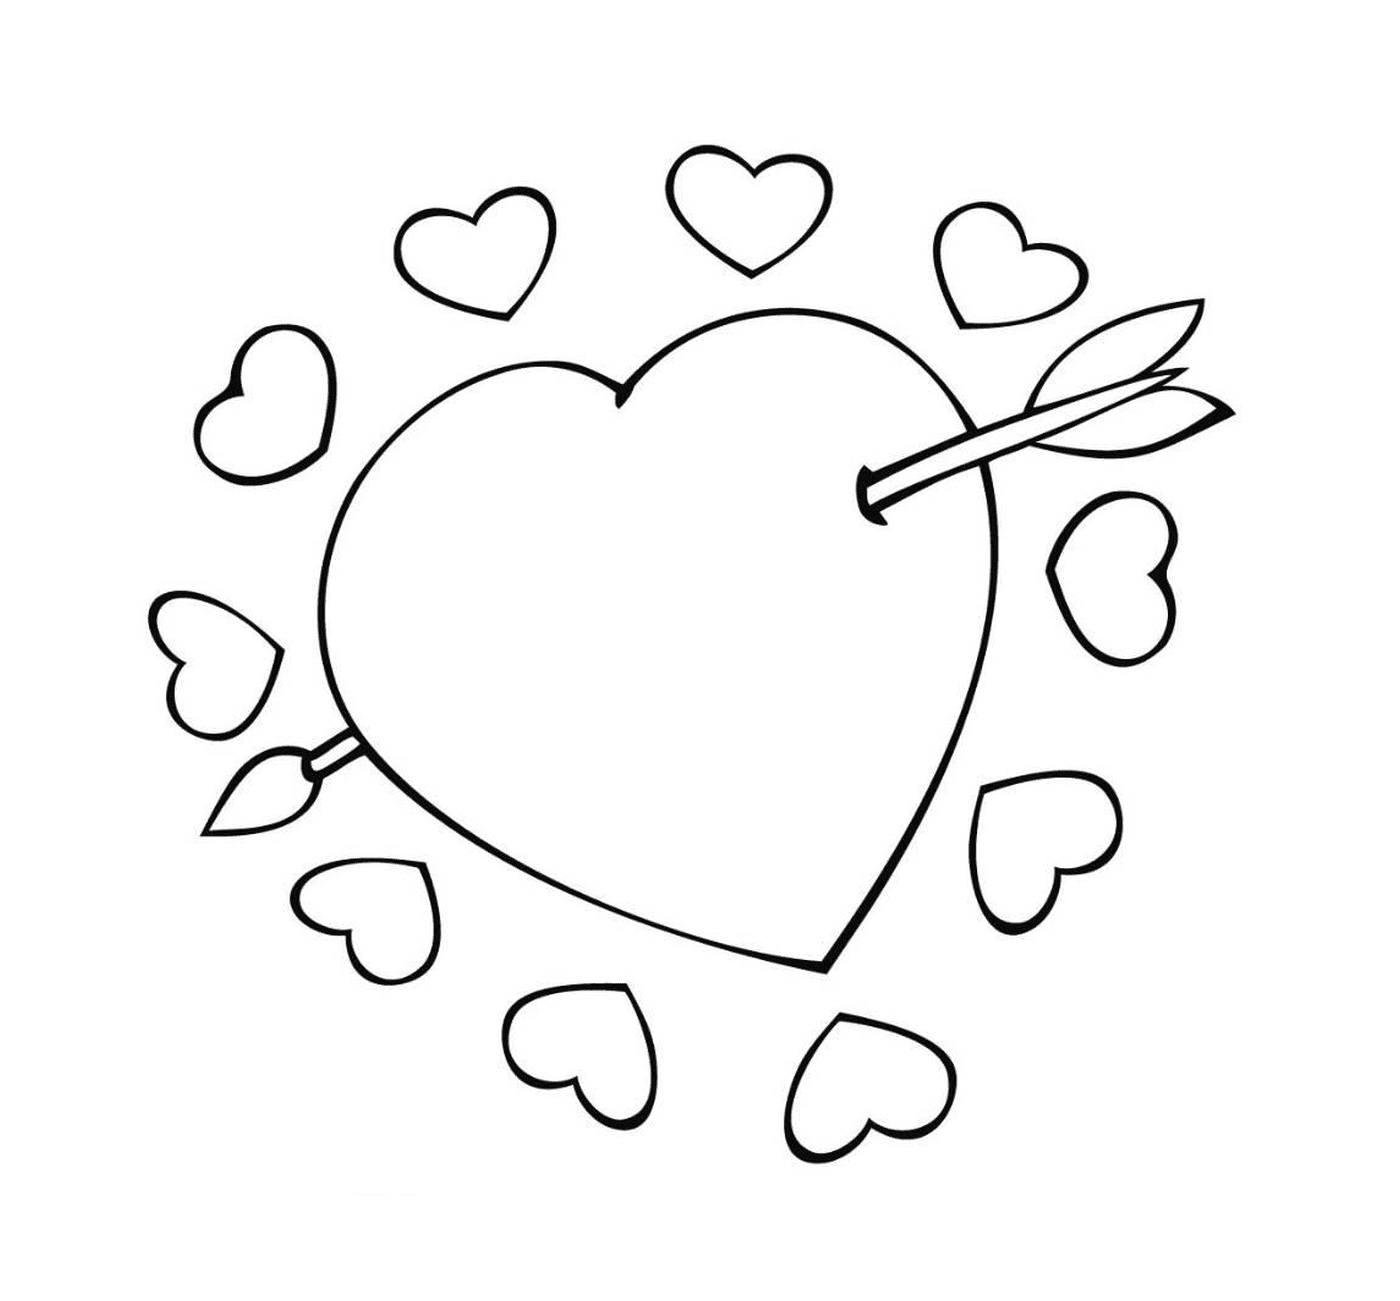  Corazón con flecha, símbolo del amor apasionado 